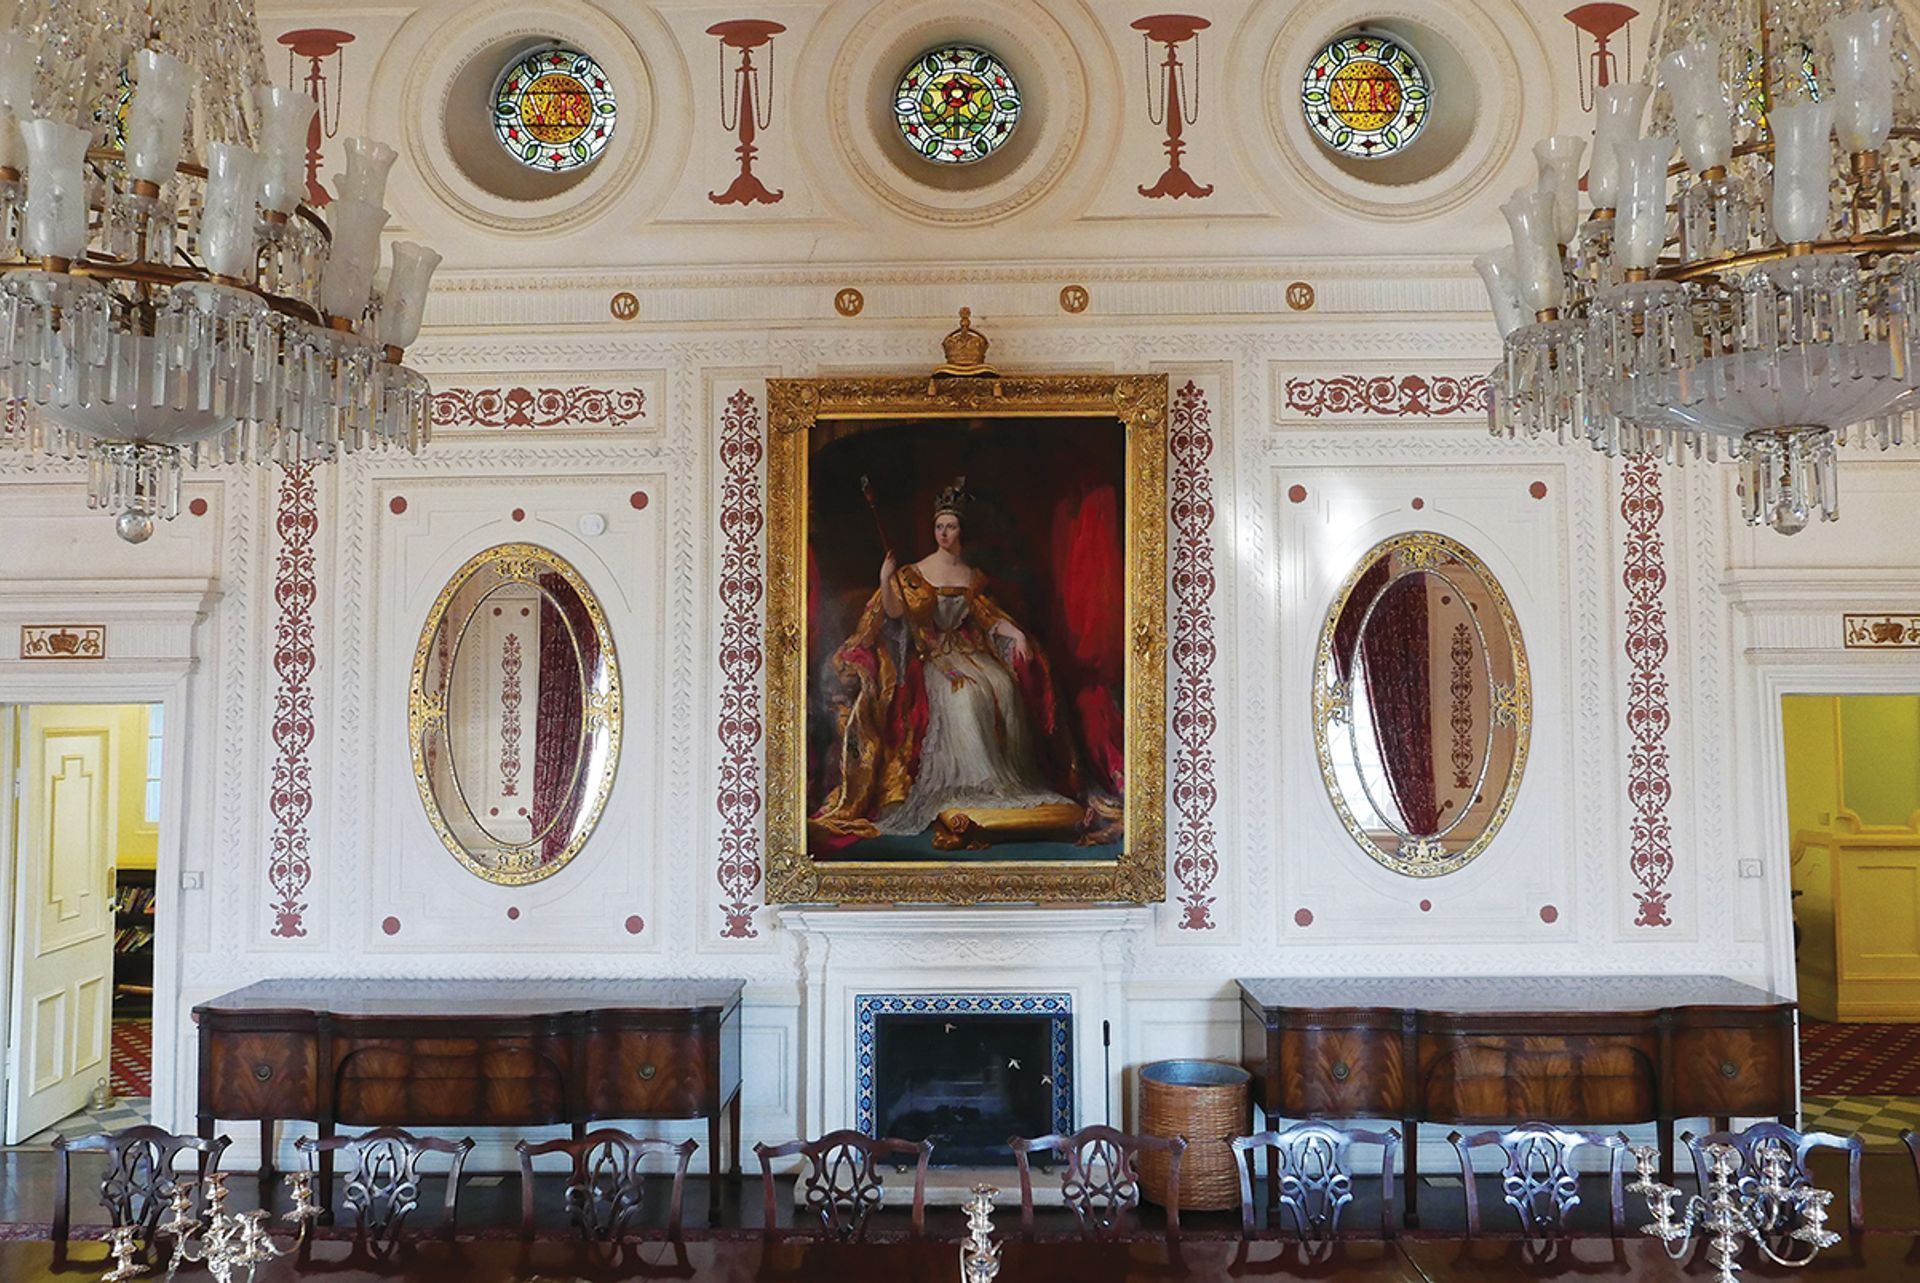 דיוקן של המלכה ויקטוריה בשגרירות בריטניה בטהרן, שצייר סר ג'ורג' הייטר הוא אחד מ-26 דיוקנאות של המלוכה באוסף האמנות הממשלתי שסומן לבחינה מחדש

© Crown copyright